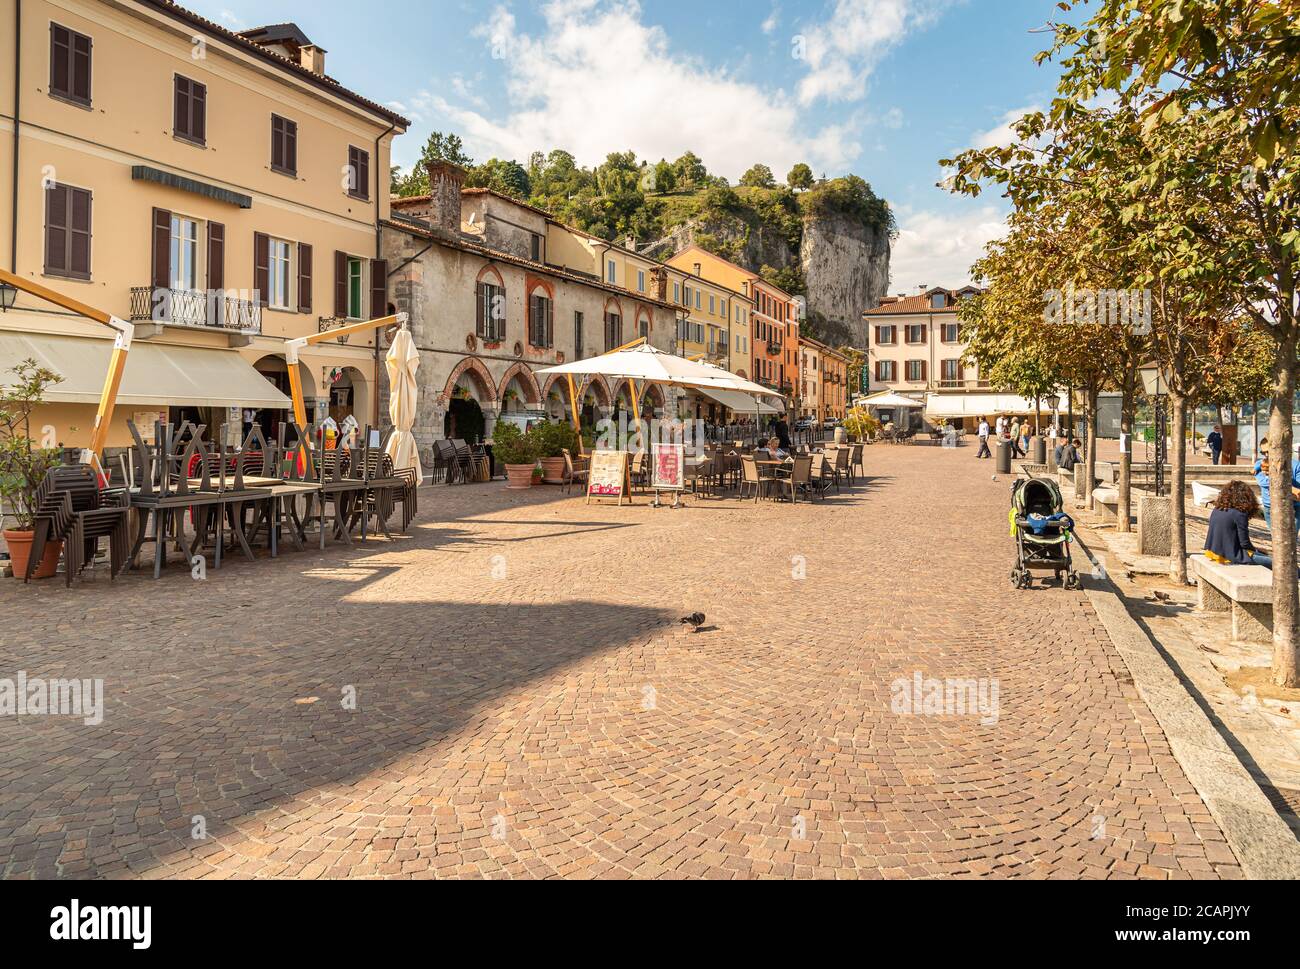 Arona, Piémont, Italie - 25 septembre 2019: Vue sur la place centrale avec des bars, restaurants et magasins traditionnels dans le centre d'Arona, situé sur le SH Banque D'Images